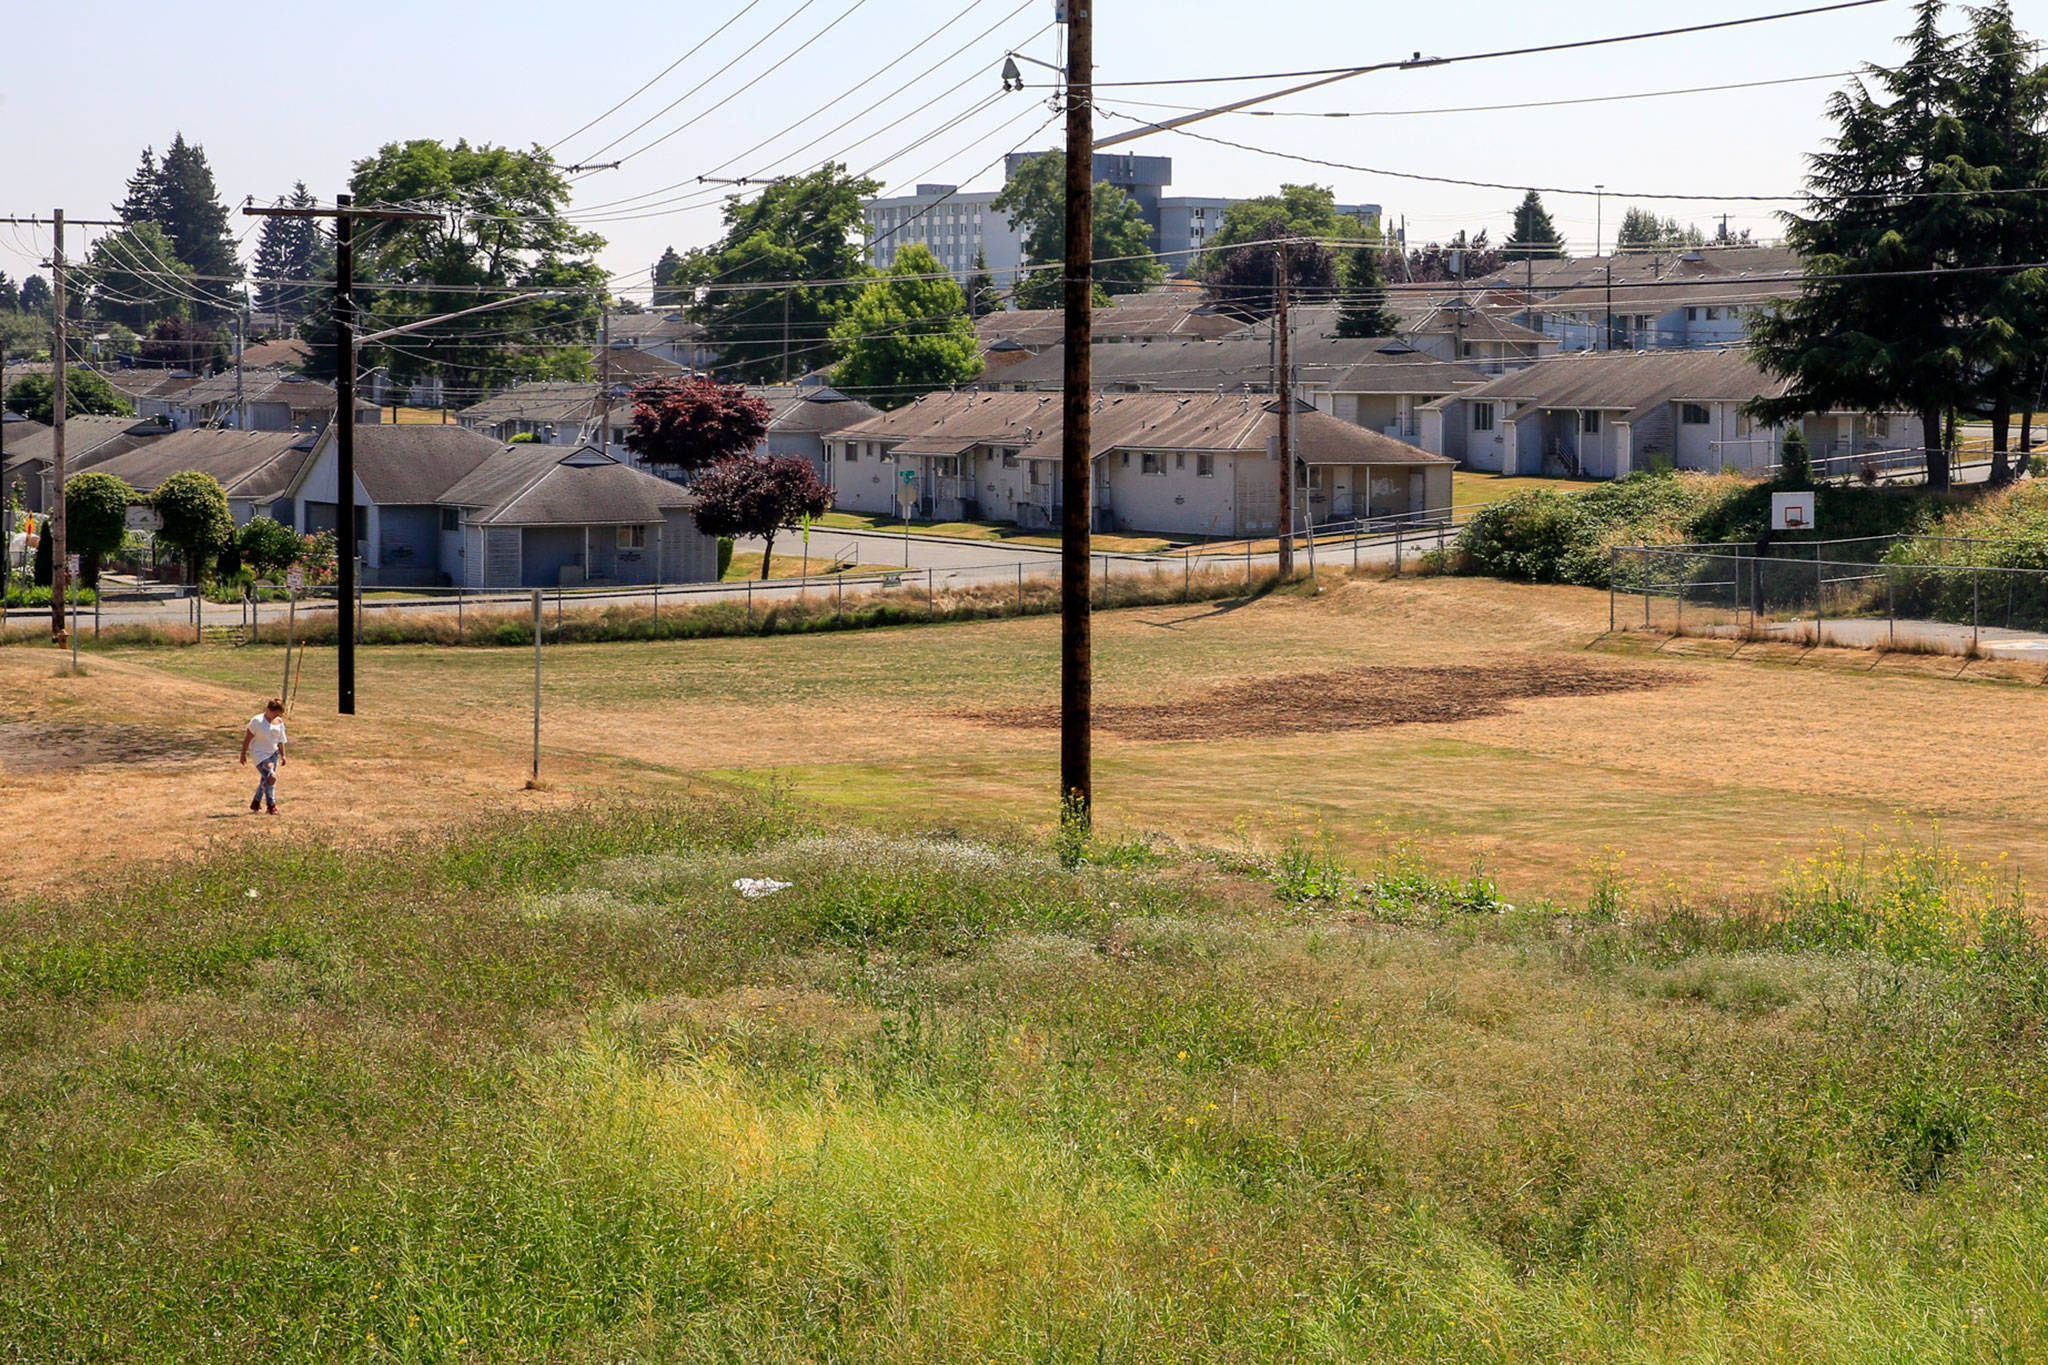 Bert Erickson Field at Wiggums Hollows Park in the Delta neighborhood of Everett. (Kevin Clark / The Herald)